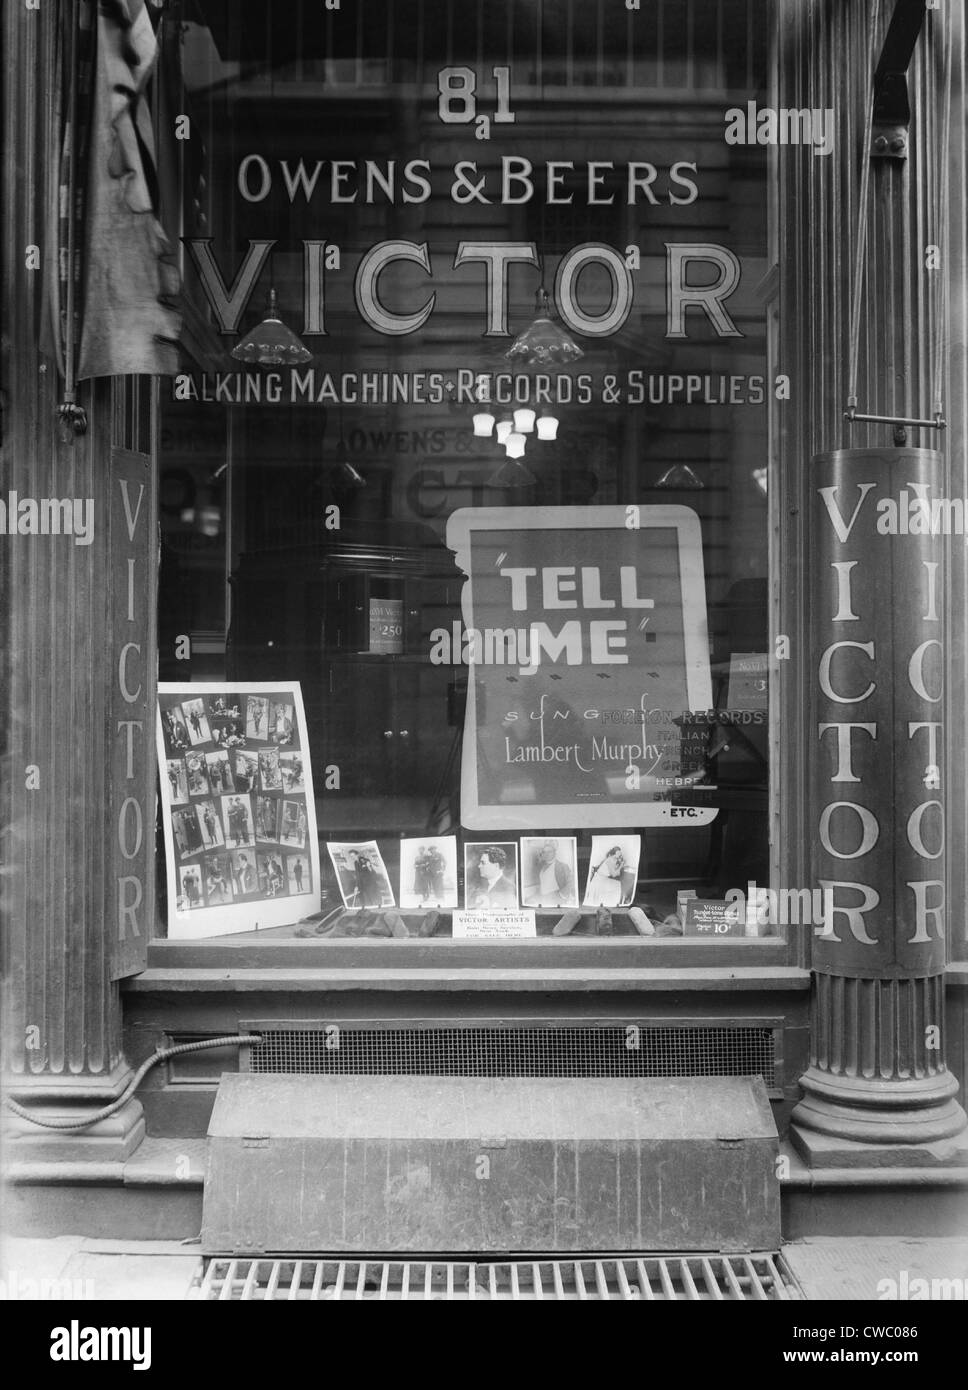 La finestra del Victor record shop in New York City, pubblicizzata "macchine parlanti, registrazioni e forniture", e visualizzate le foto Foto Stock